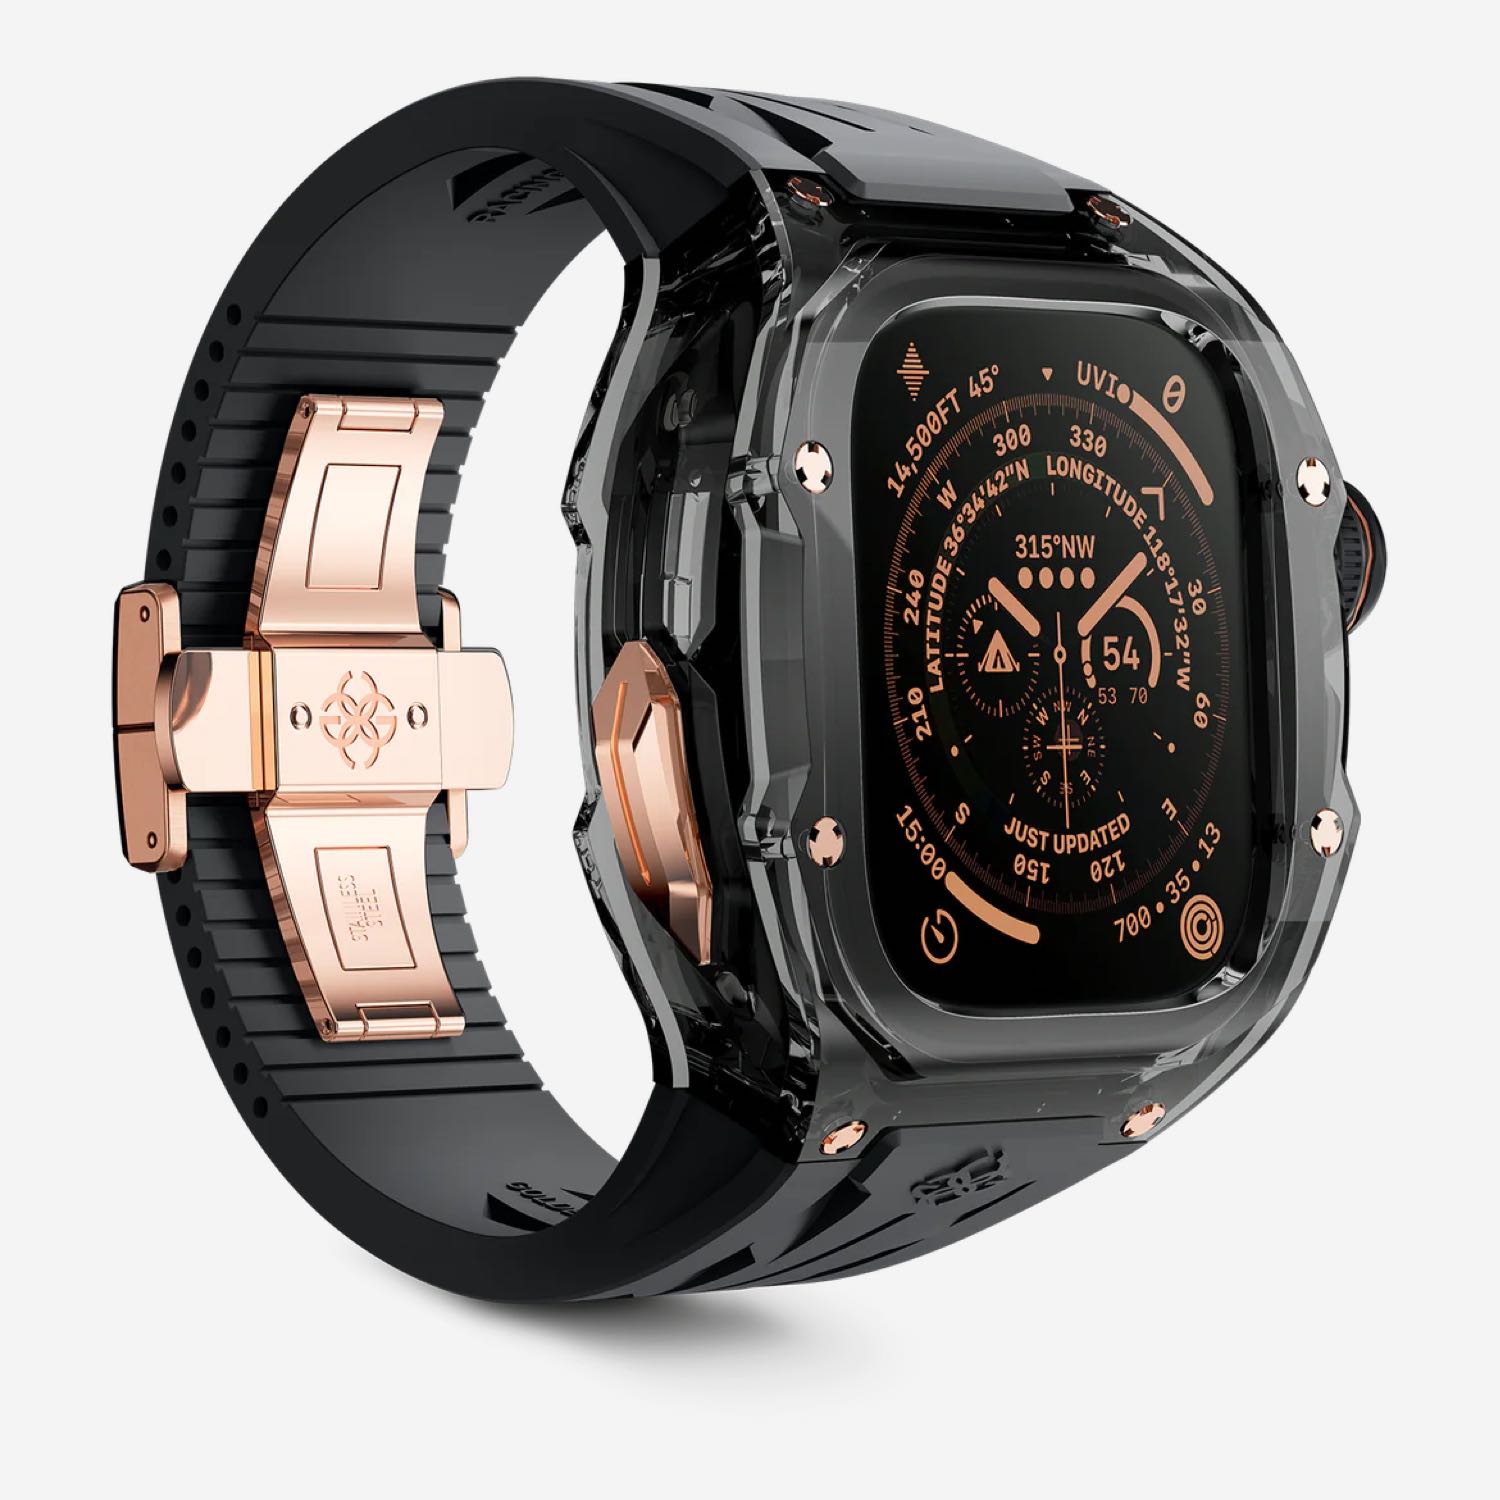 Super quality price bt calling smartwatch| Alibaba.com